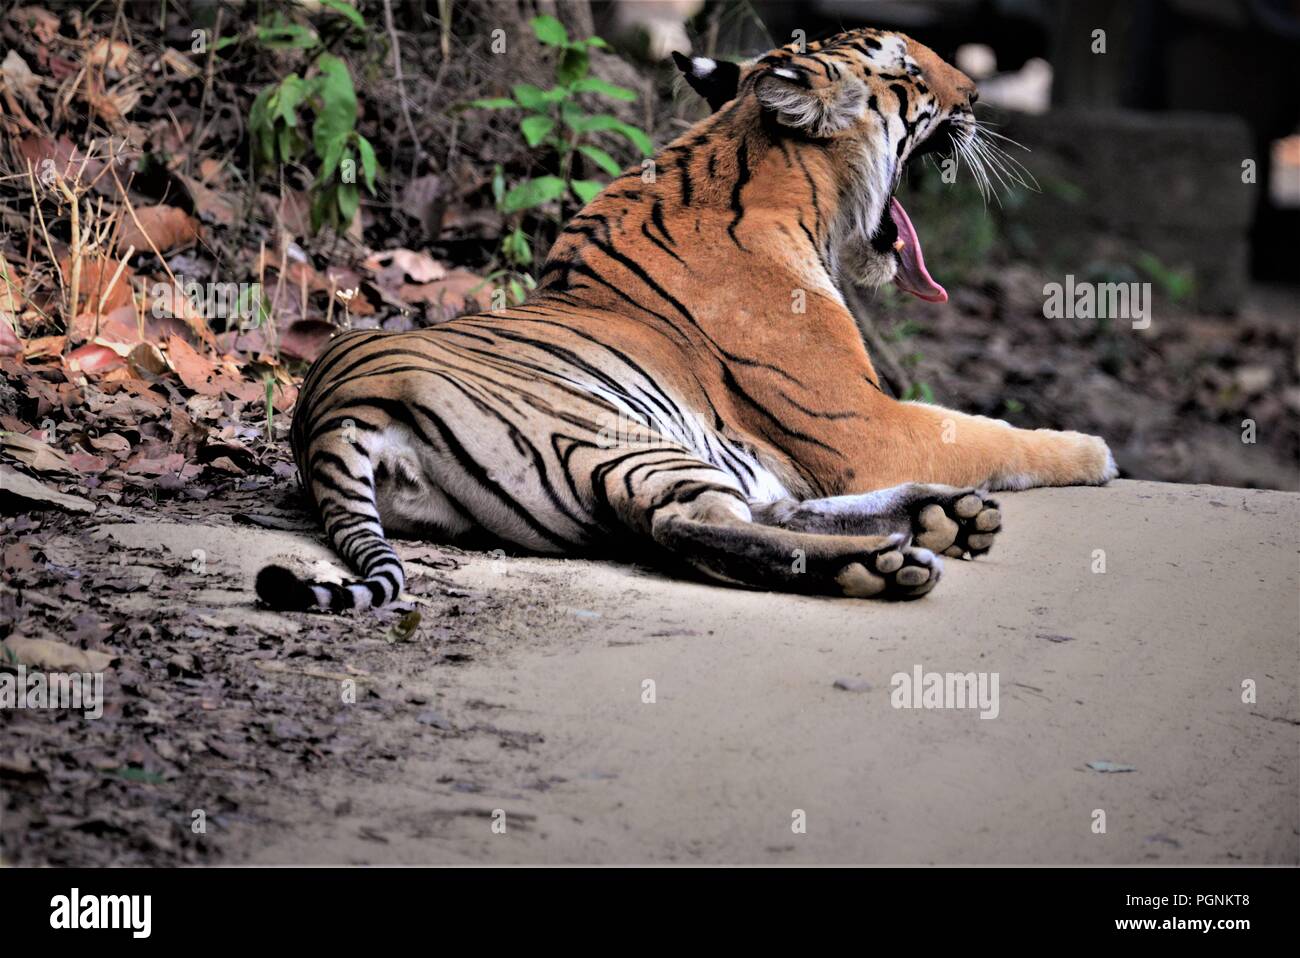 Royal Indian Bengal Tiger / Indian tiger Stock Photo